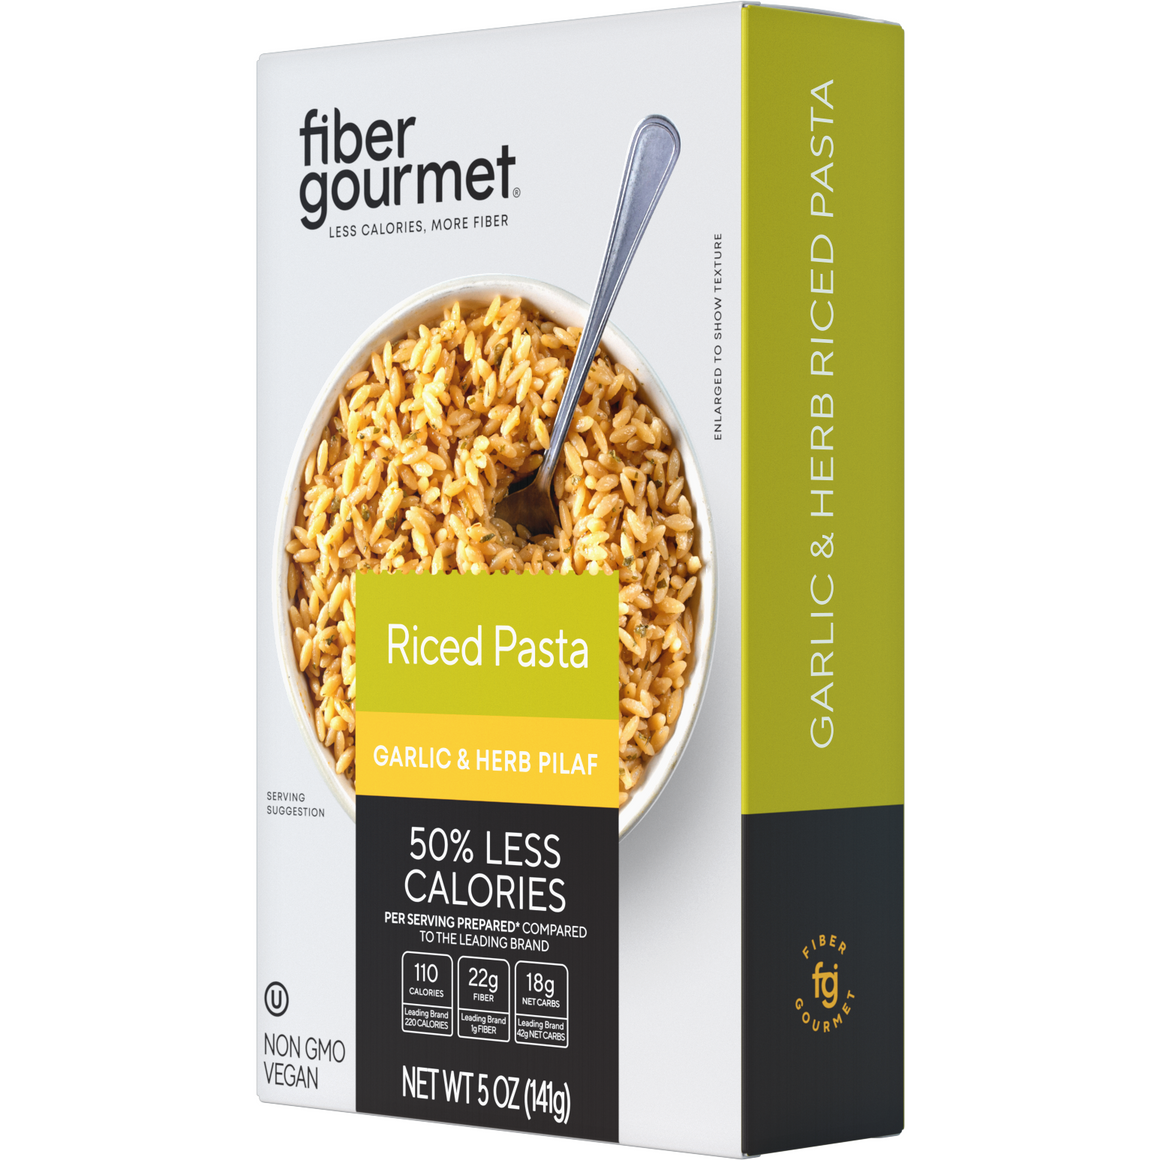 Fiber Gourmet - High Fiber Light Rice Pasta - Garlic and Herb - 5 oz box